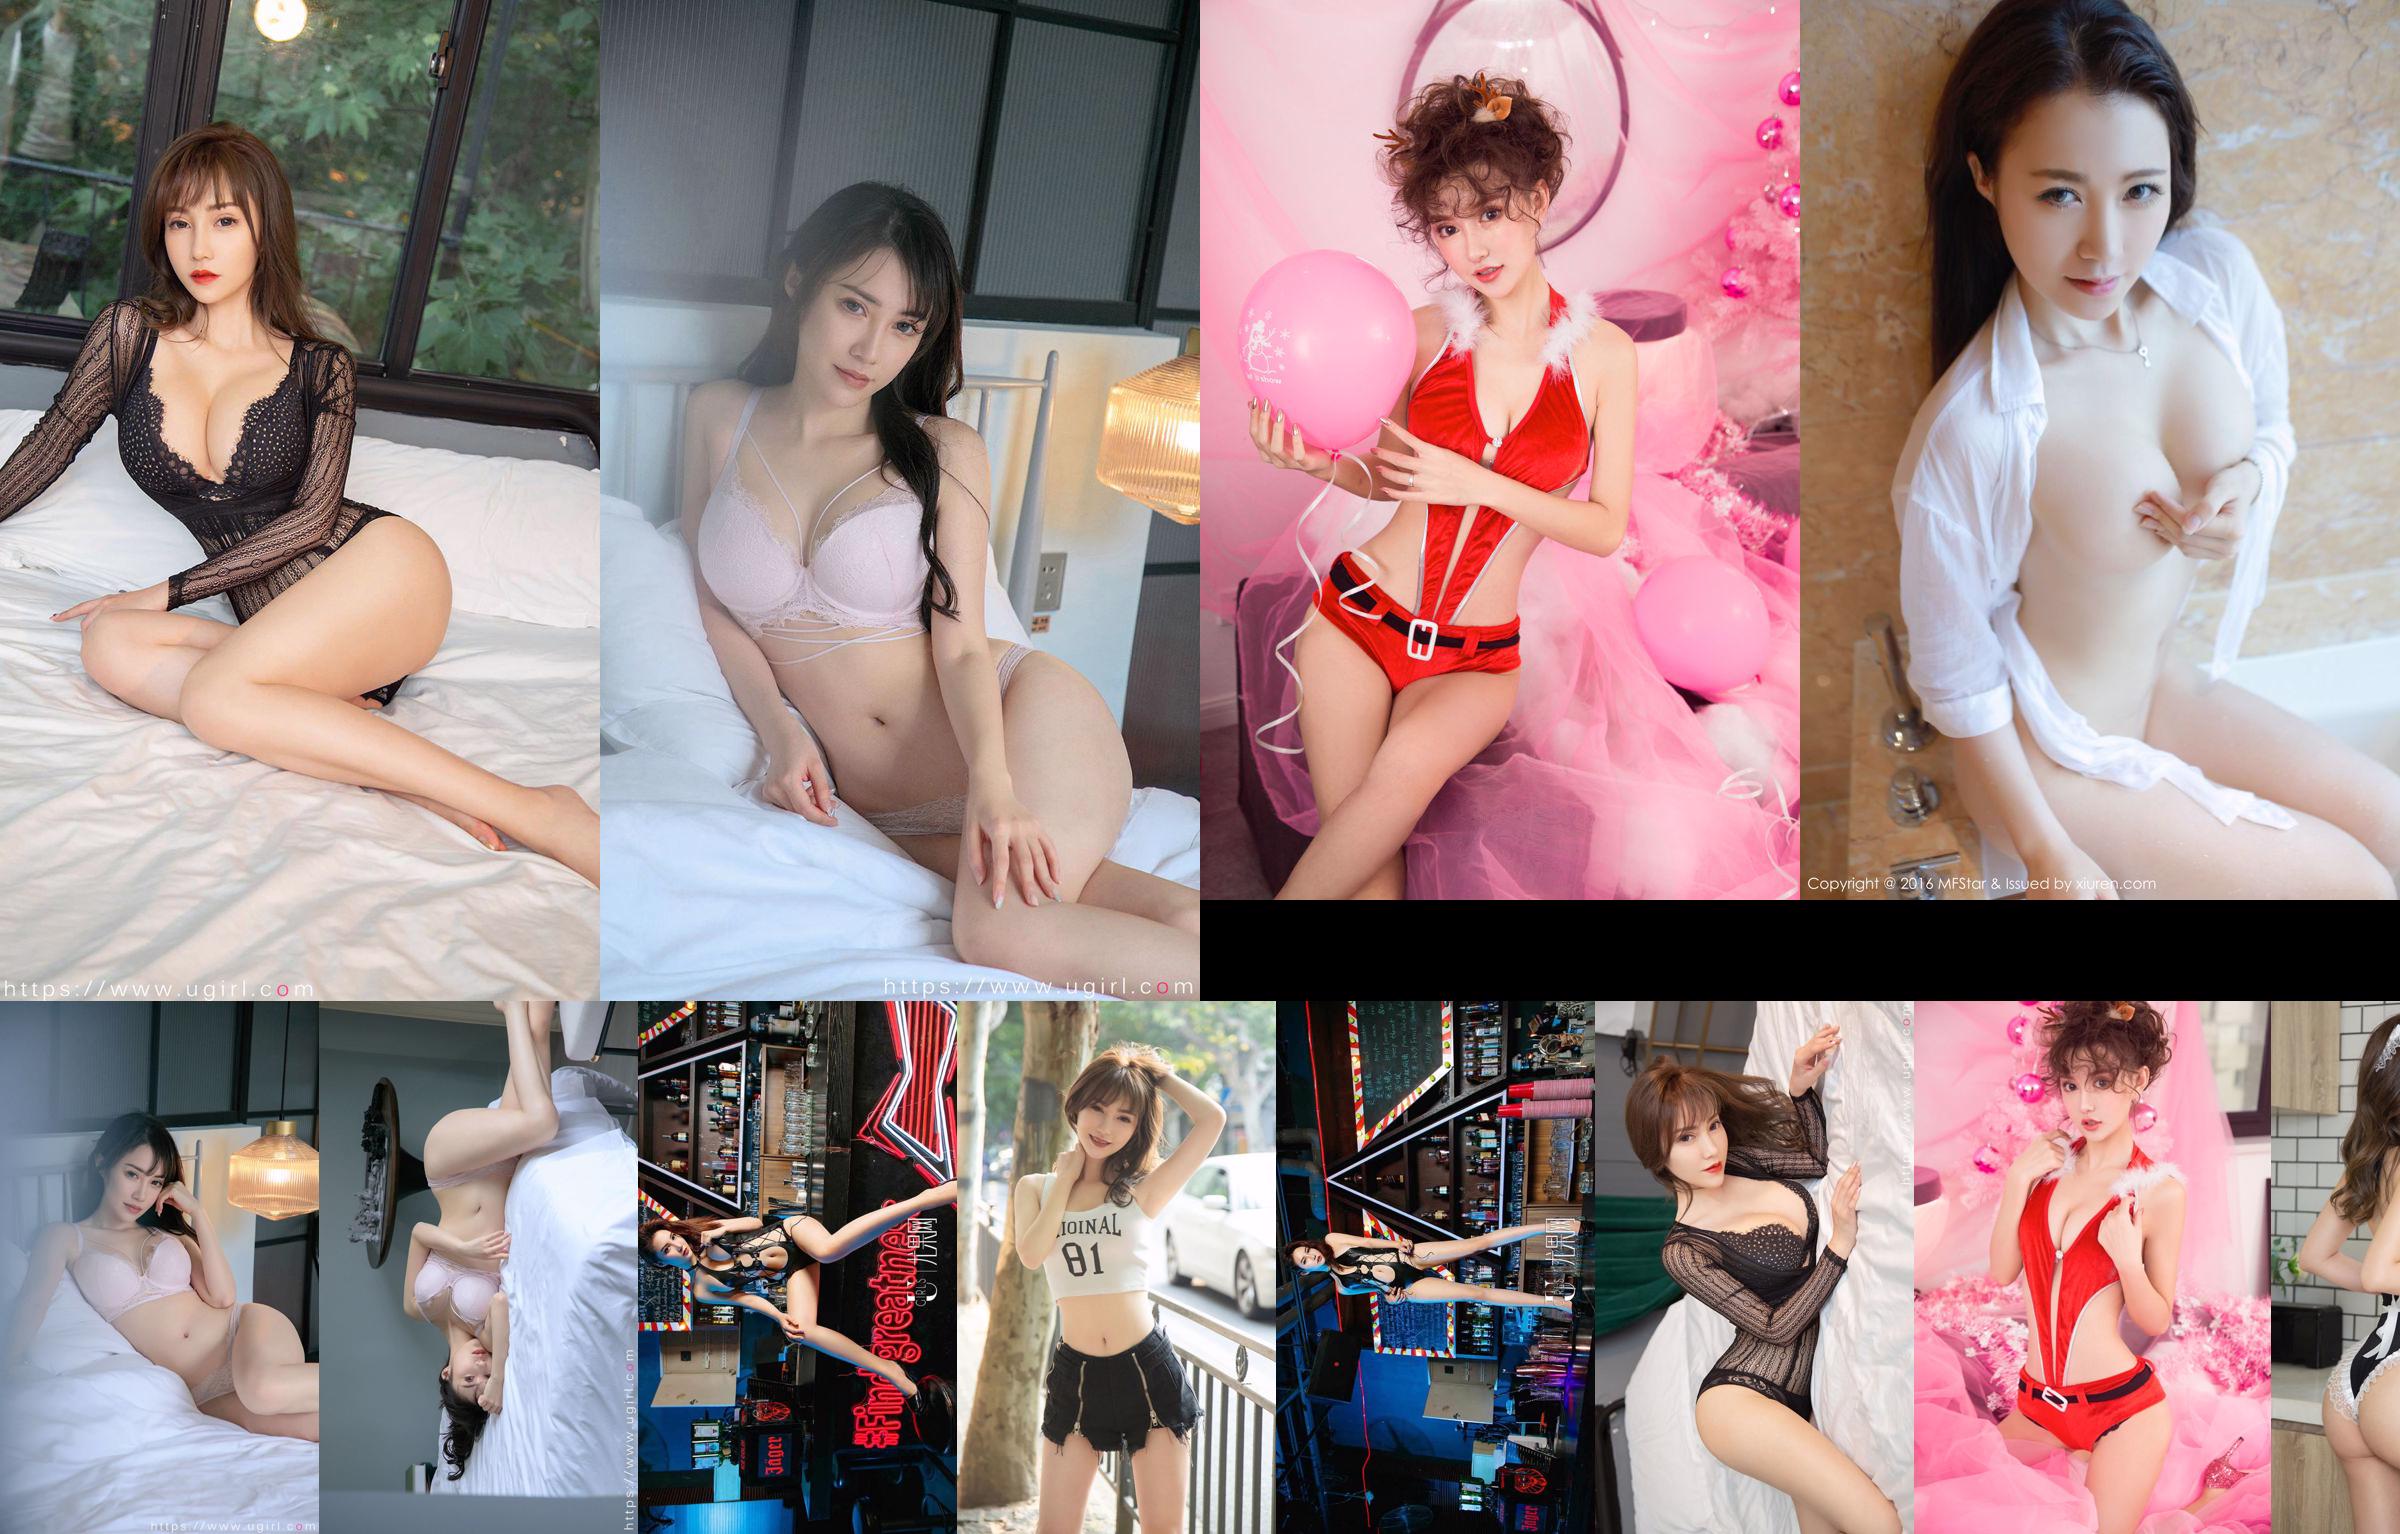 [爱尤物Ugirls] No.2179 Xia Lingman&Meidi&Angela&Qingshu&Anaela Chuchu&Liu Yuxin&Guoer Victoria full of love No.4082ba Page 12